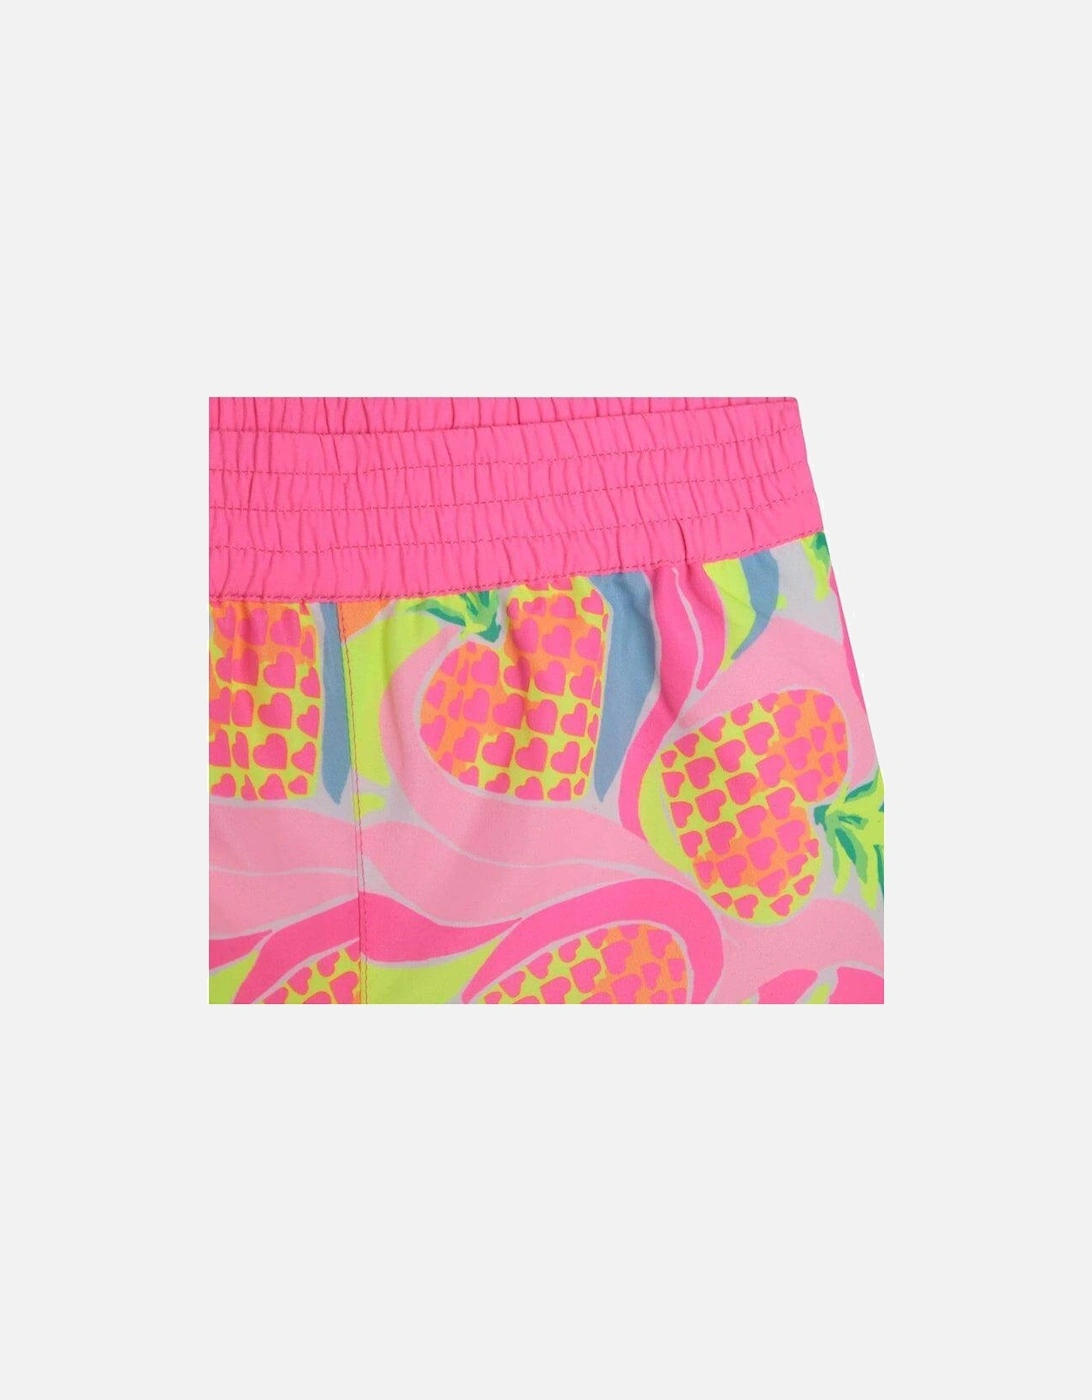 Girls Pink Pineapple Shorts